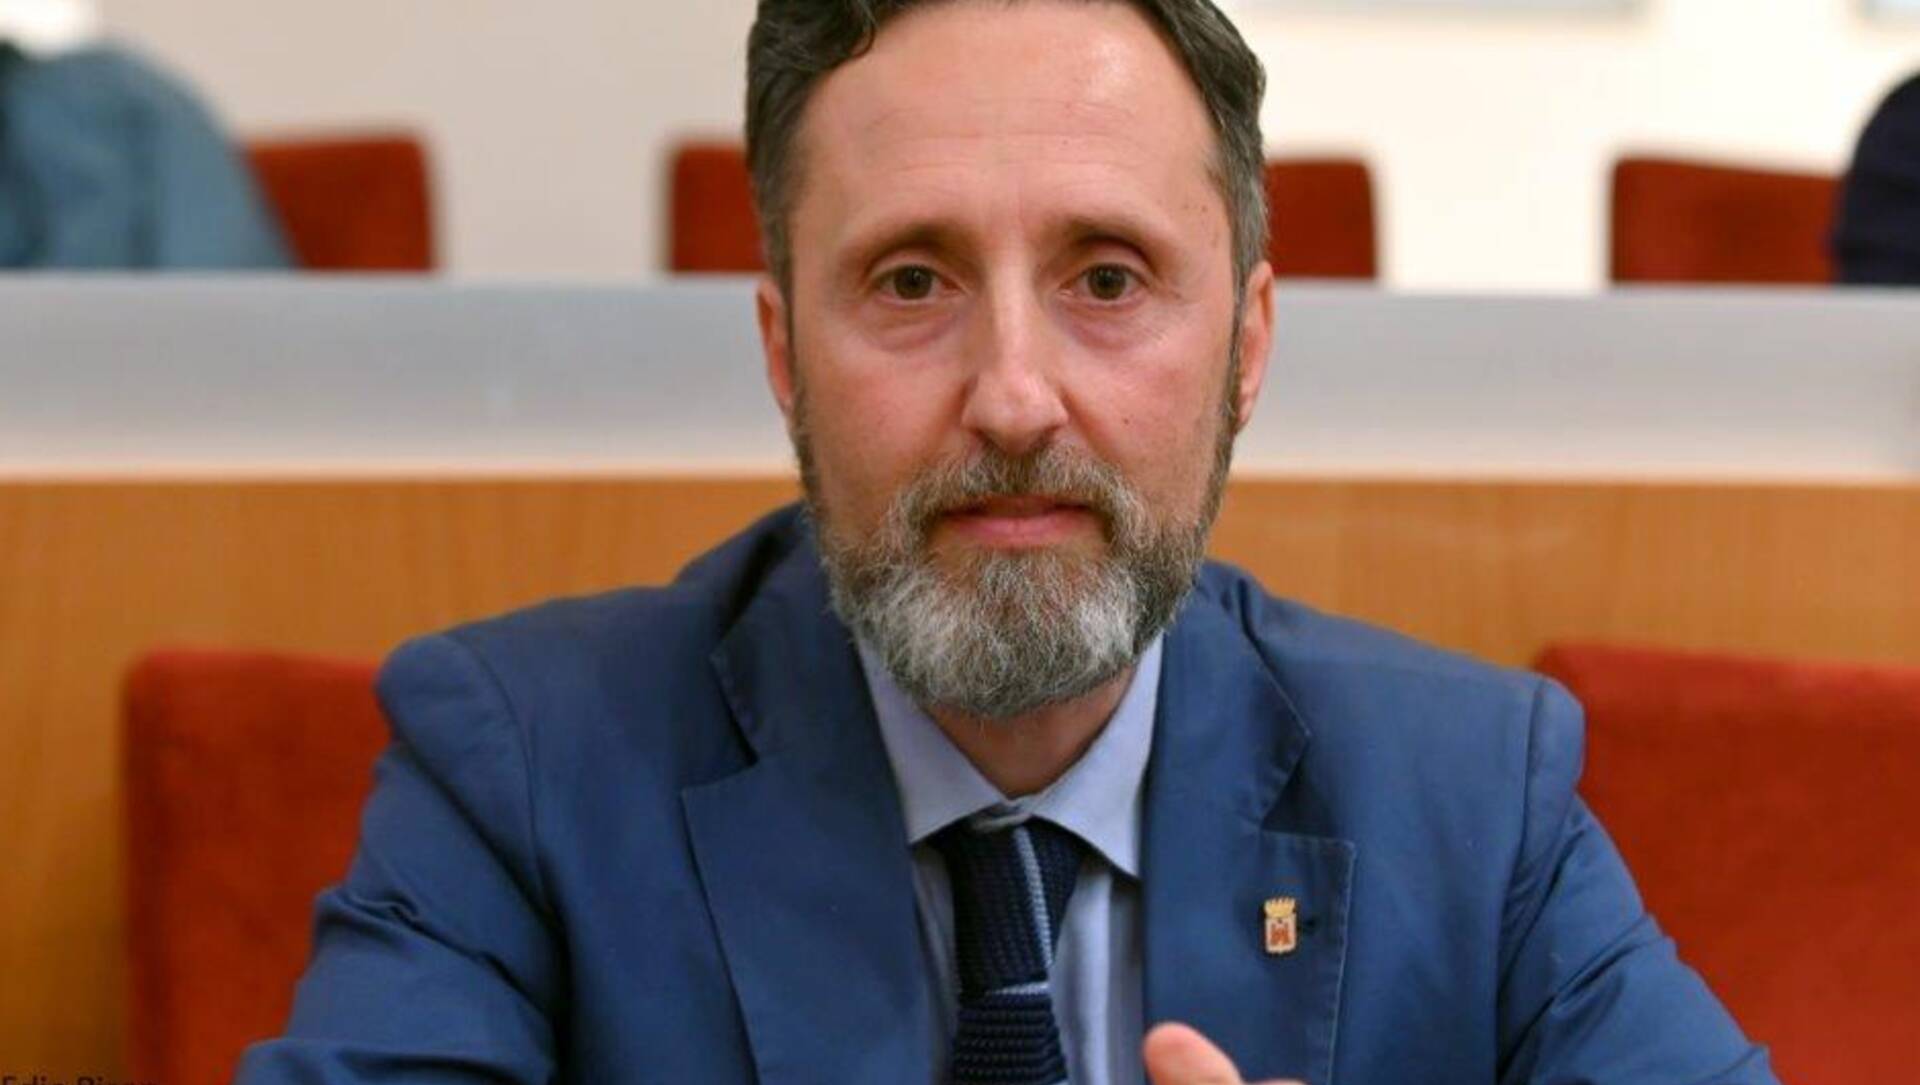 Consiglio comunale aperto ex Isotta, Amadio boccia il sindaco Airoldi: “In trasparenza e condotta”